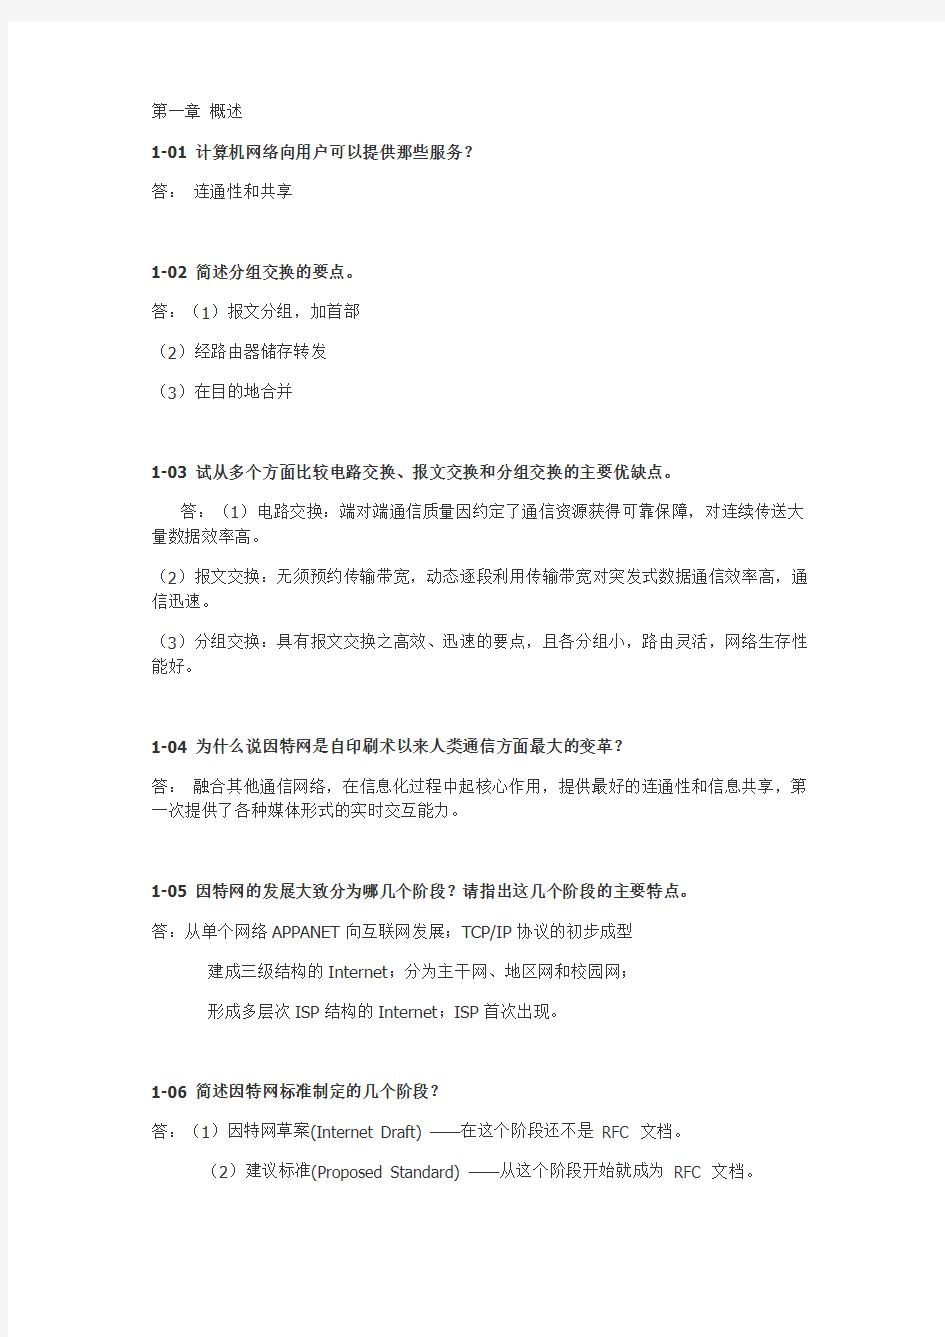 《计算机网络系统方法(第5版)》课后答案 中文